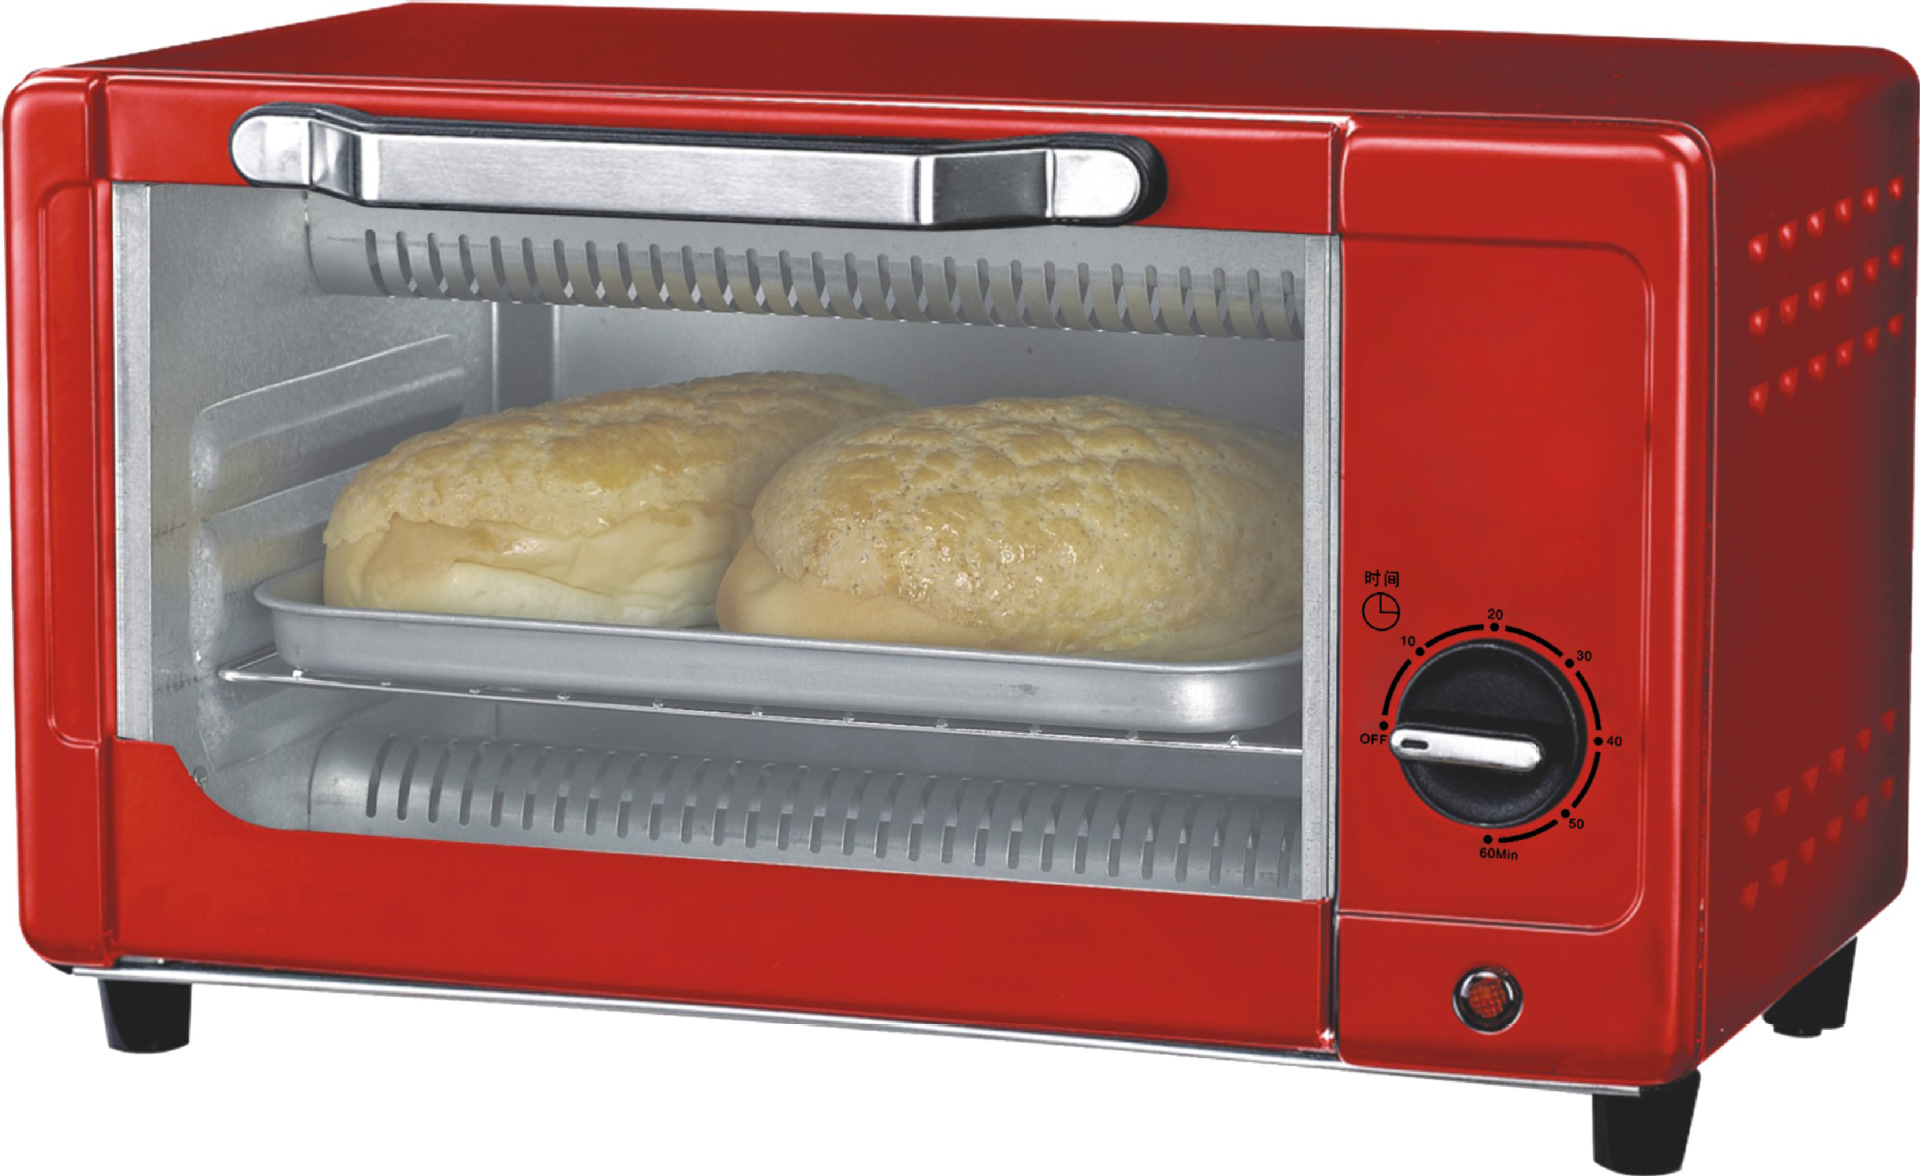 欧式面包烤炉 HBWO-3003